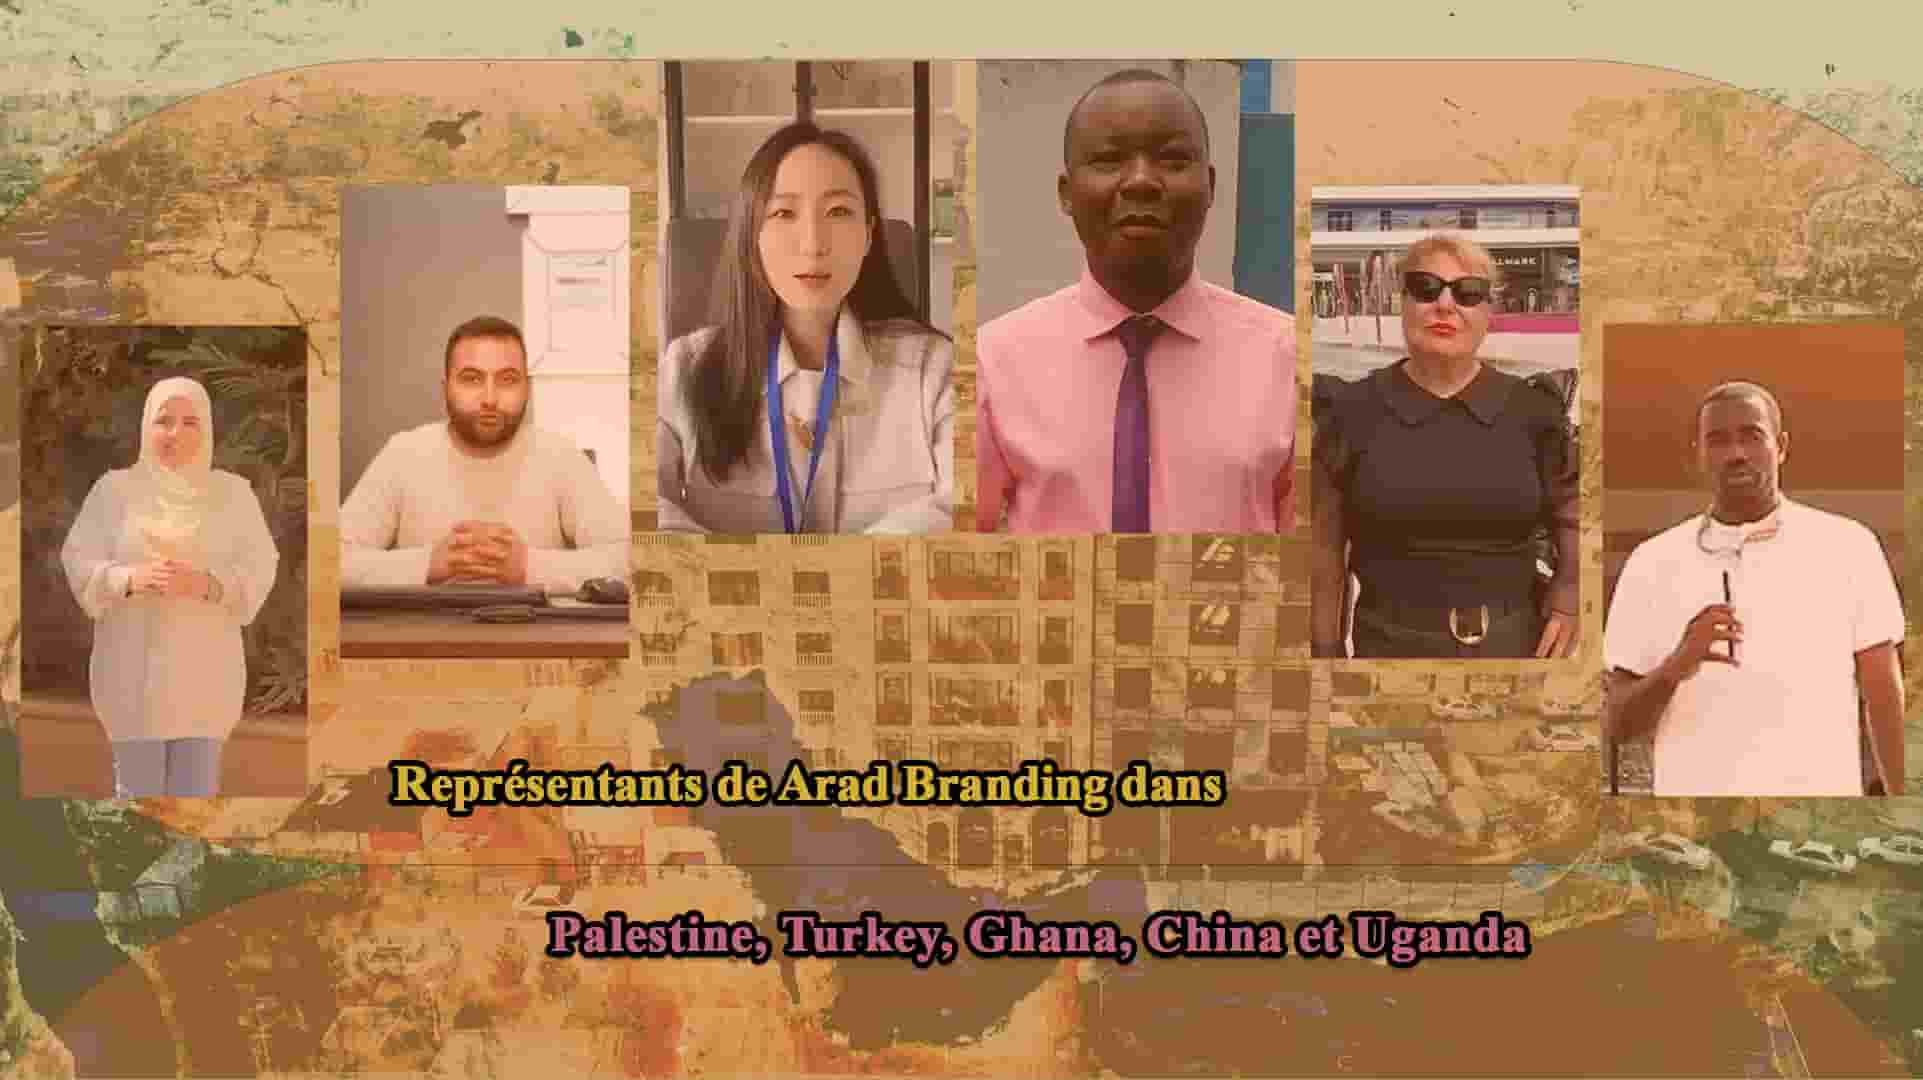 Représentants de China, Turkey, Ghana, Uganda et Palestine + Développement des relations entre Aradis iranien et Aradis d'autres pays